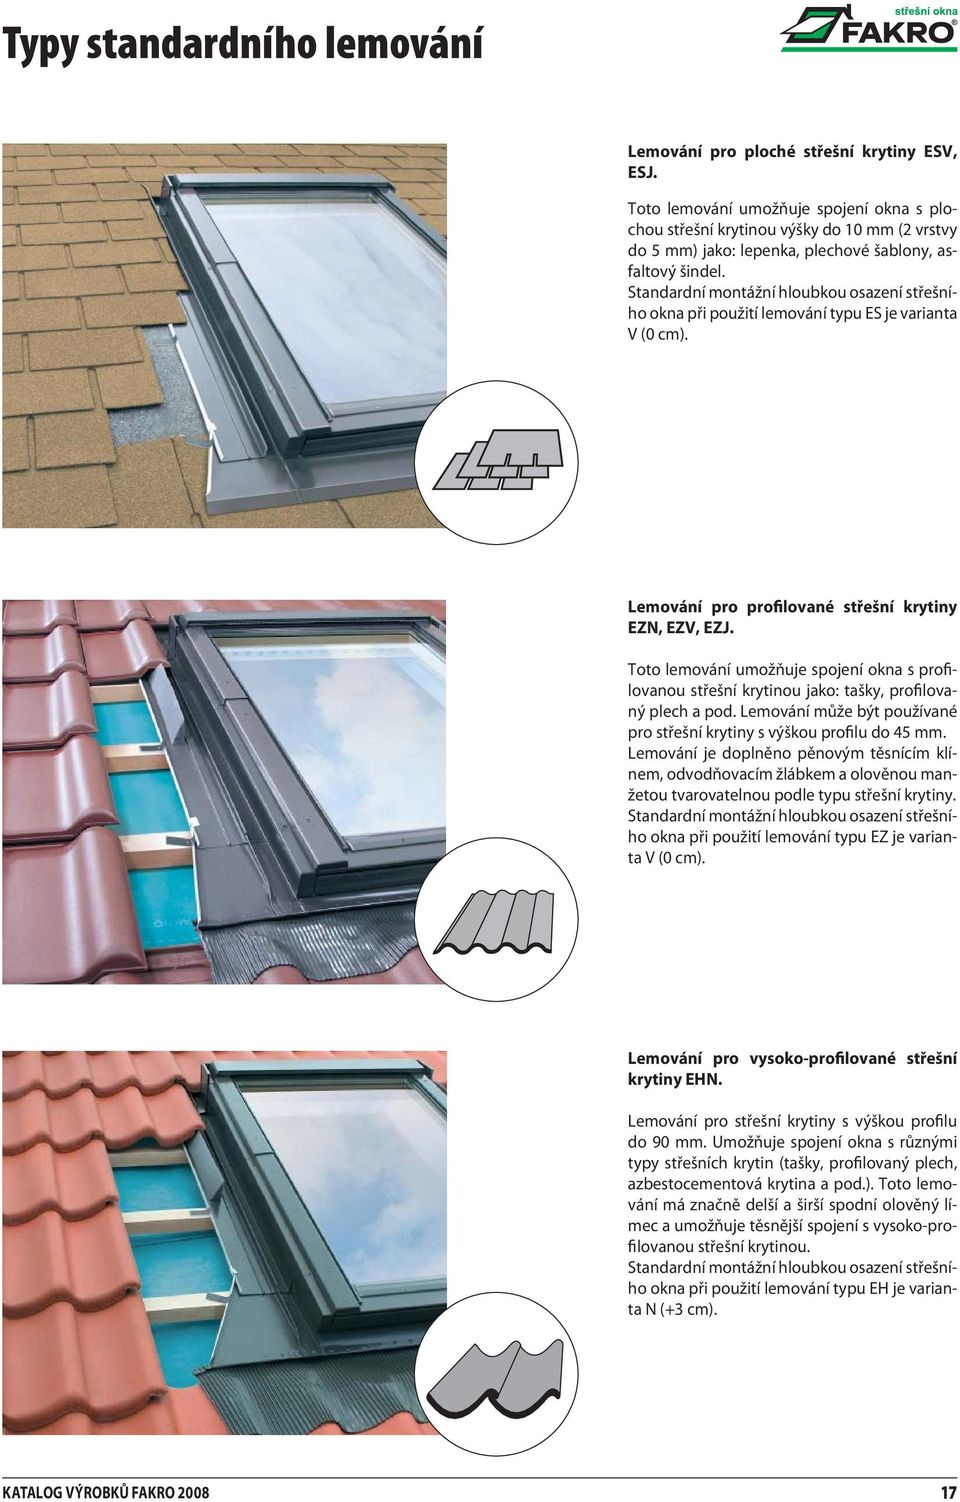 Standardní montážní hloubkou osazení střešního okna při použití lemování typu ES je varianta V (0 cm). Lemování pro profilované střešní krytiny EZN, EZV, EZJ.